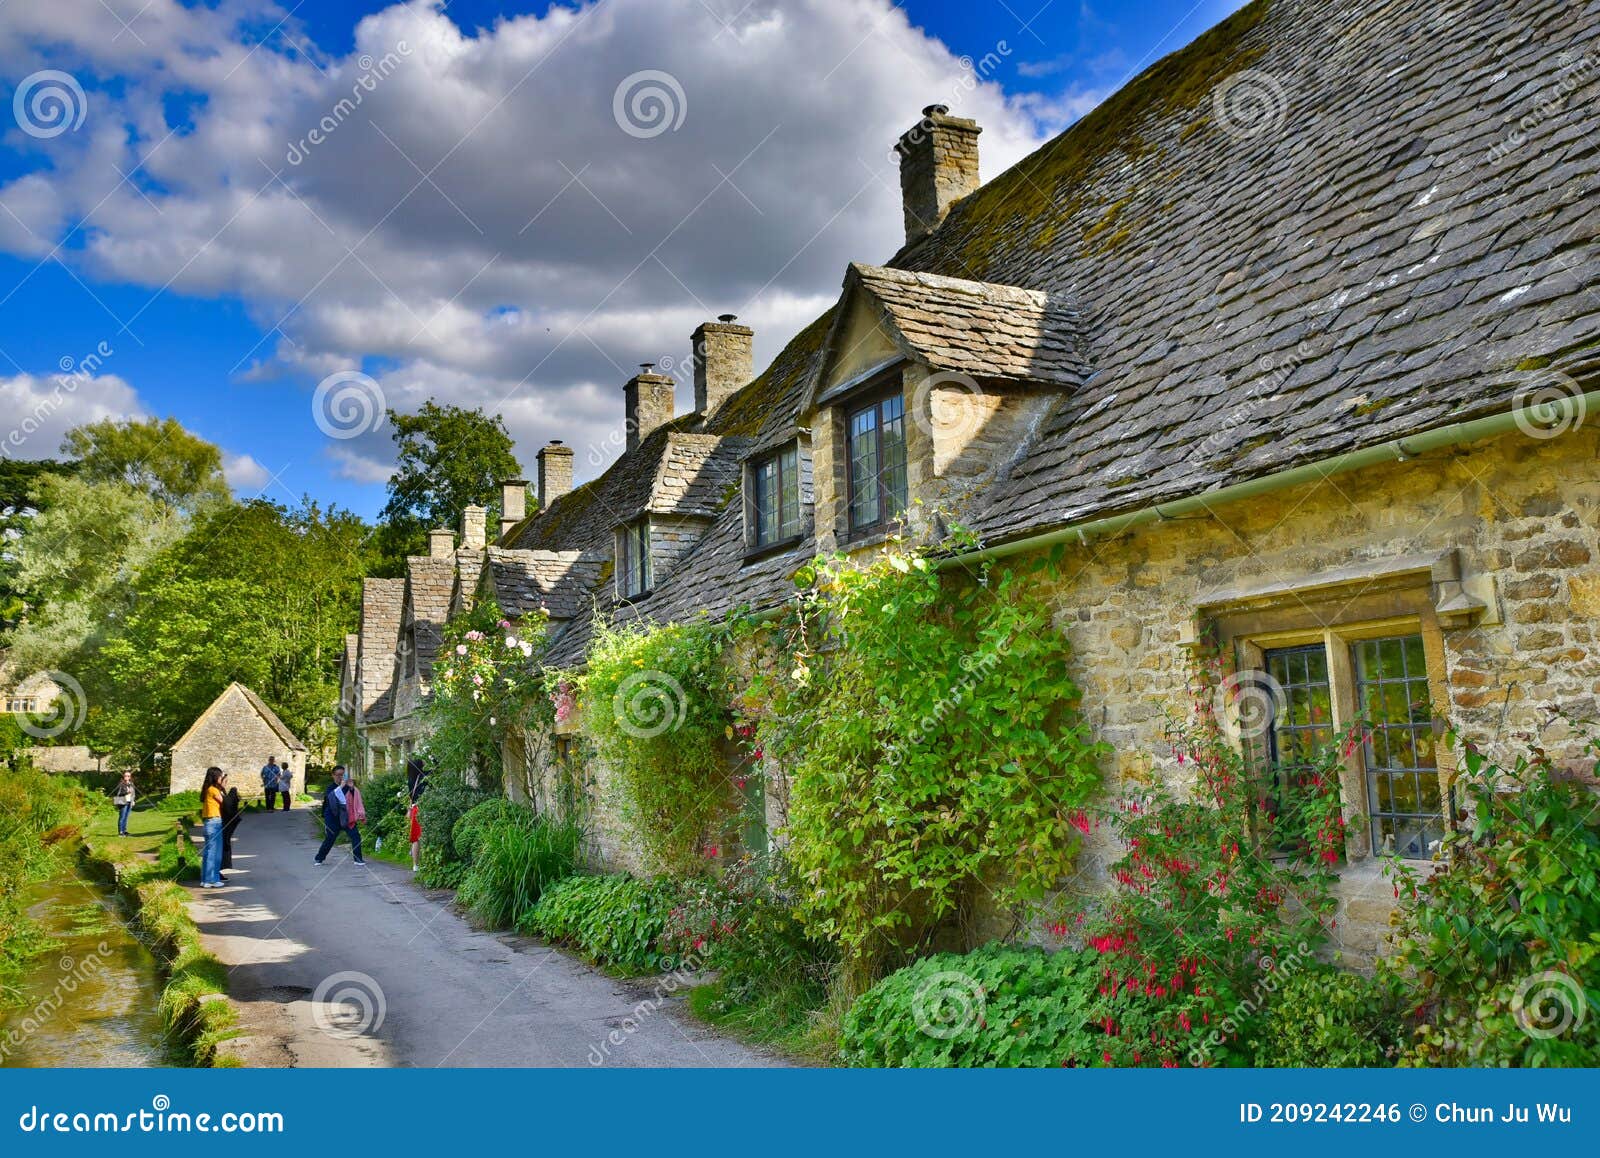 английские дома в деревне фото интерьеры